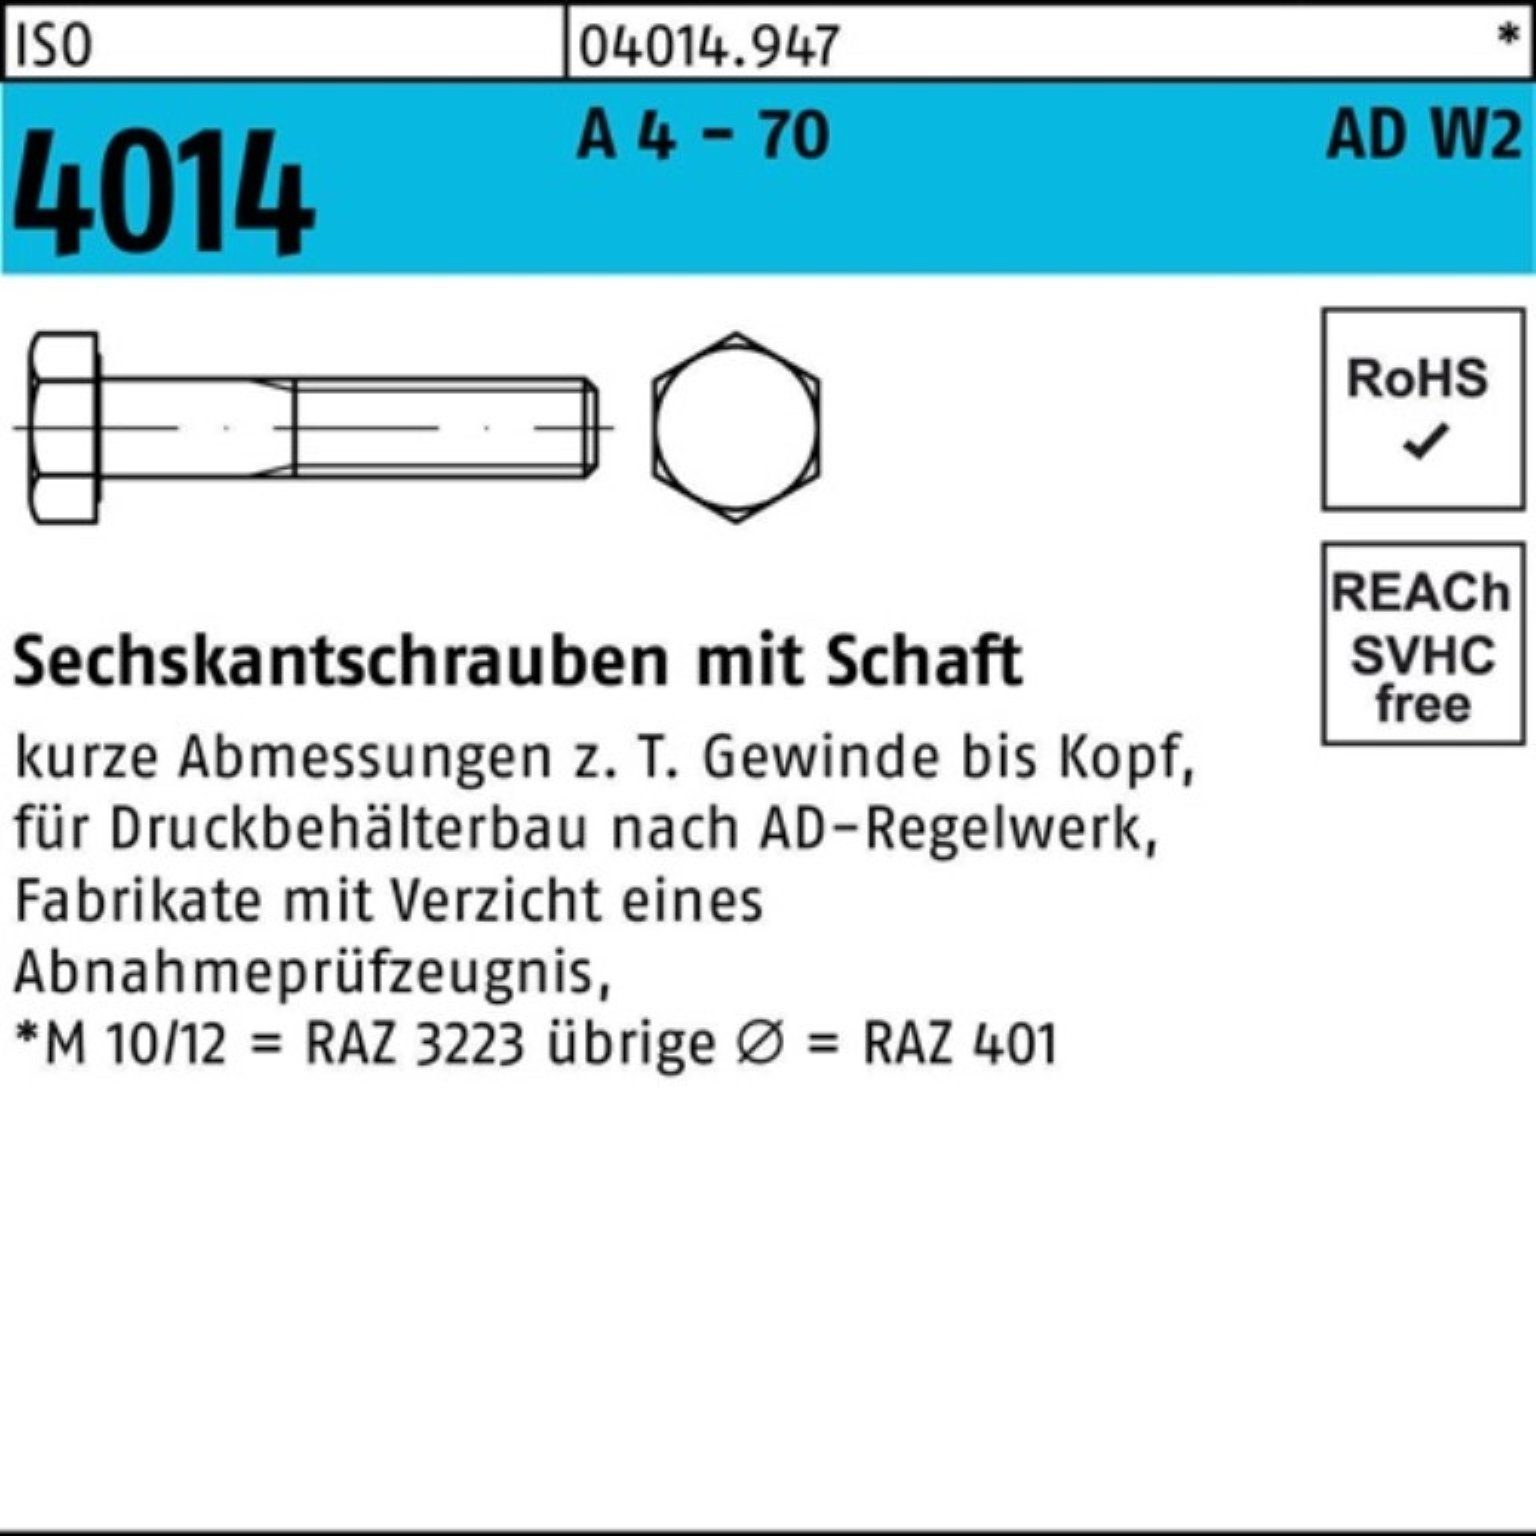 Bufab Sechskantschraube 100er Pack Sechskantschraube ISO 4014 Schaft M16x 110 A 4 - 70 AD-W2 2